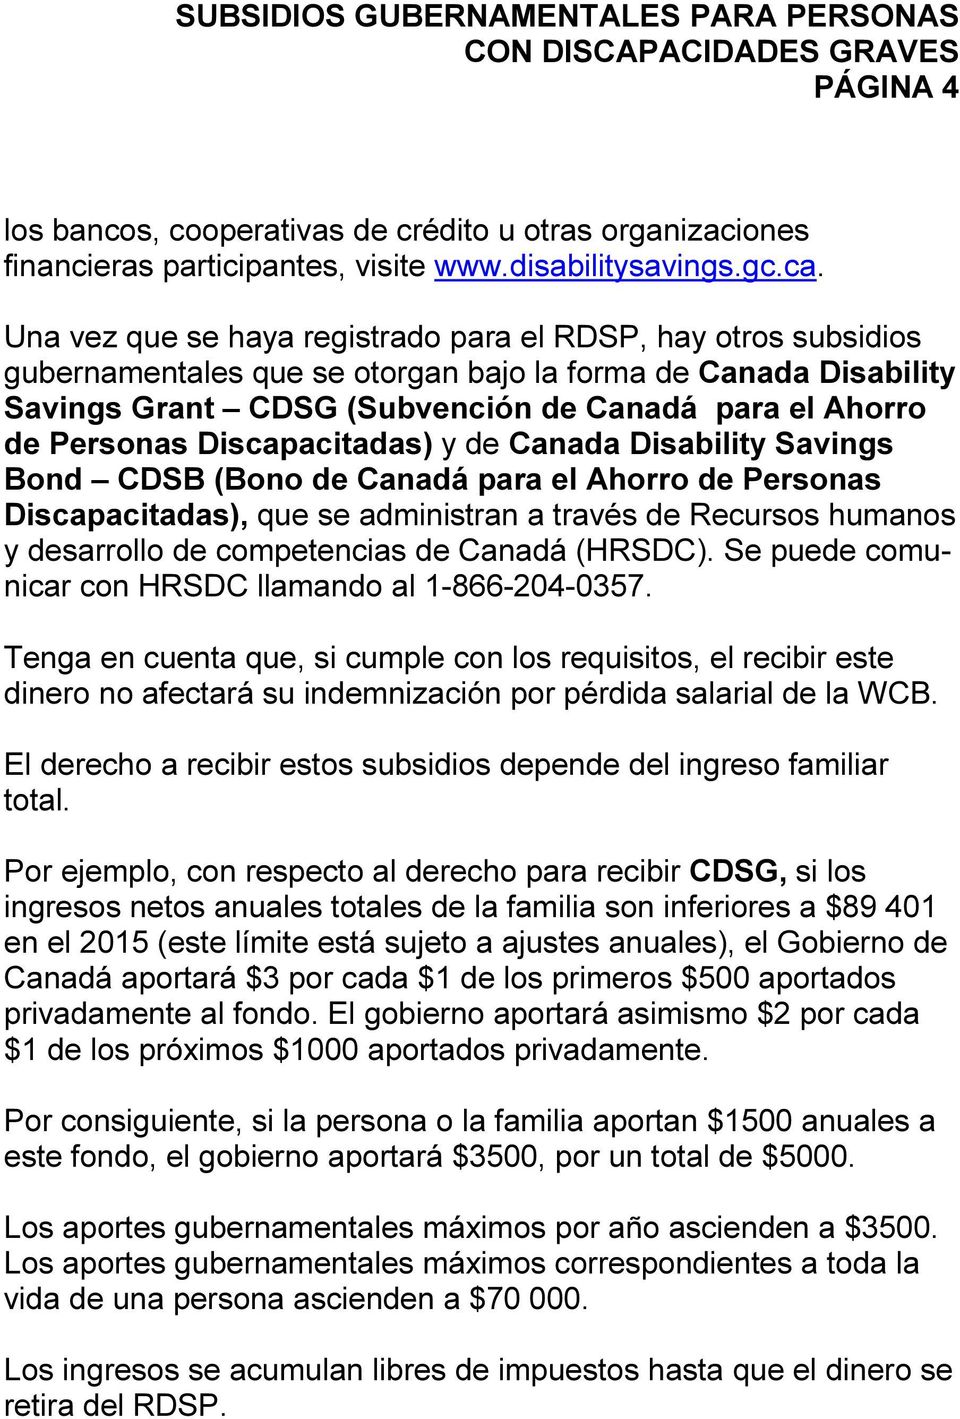 Discapacitadas) y de Canada Disability Savings Bond CDSB (Bono de Canadá para el Ahorro de Personas Discapacitadas), que se administran a través de Recursos humanos y desarrollo de competencias de